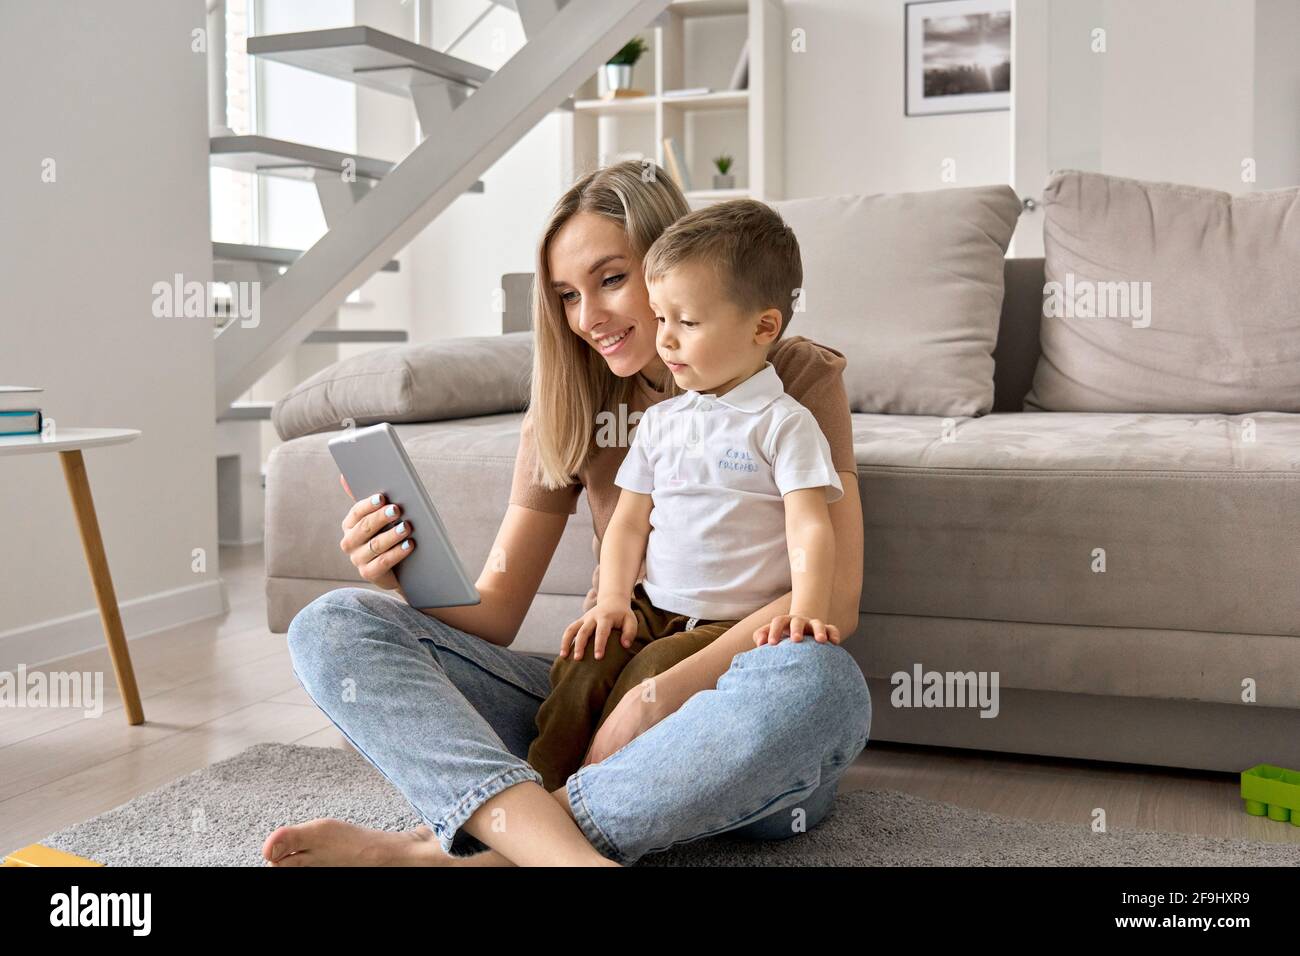 Une maman de famille heureuse et un enfant mignon, un enfant, tenant une tablette numérique à la maison. Banque D'Images